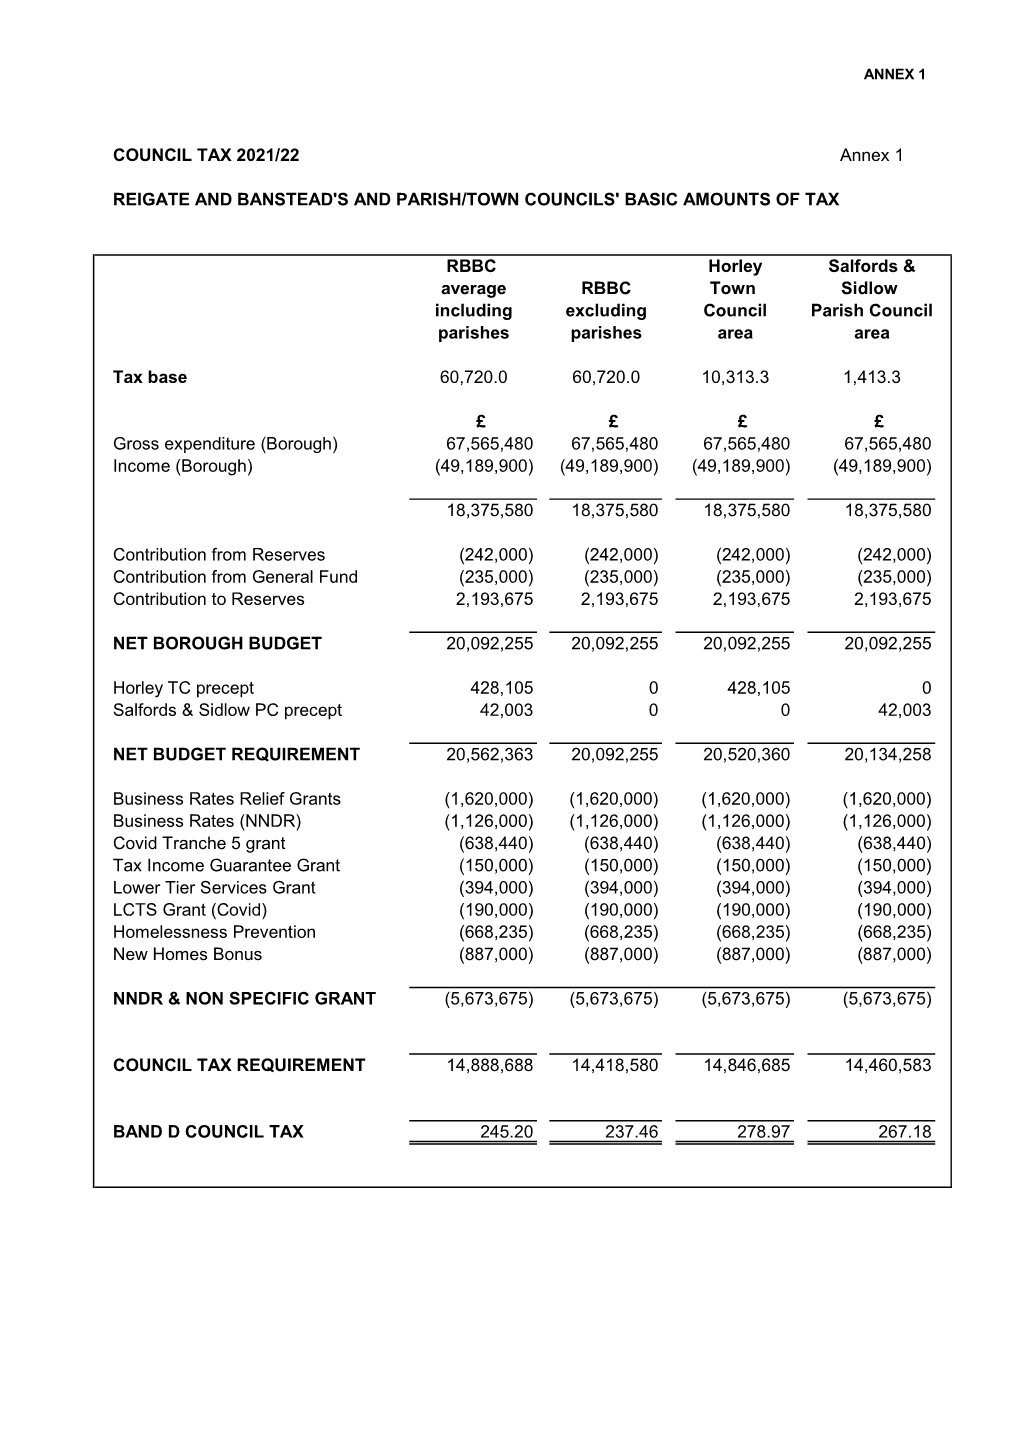 Council Tax Setting Annexes 2021-22.Xlsx